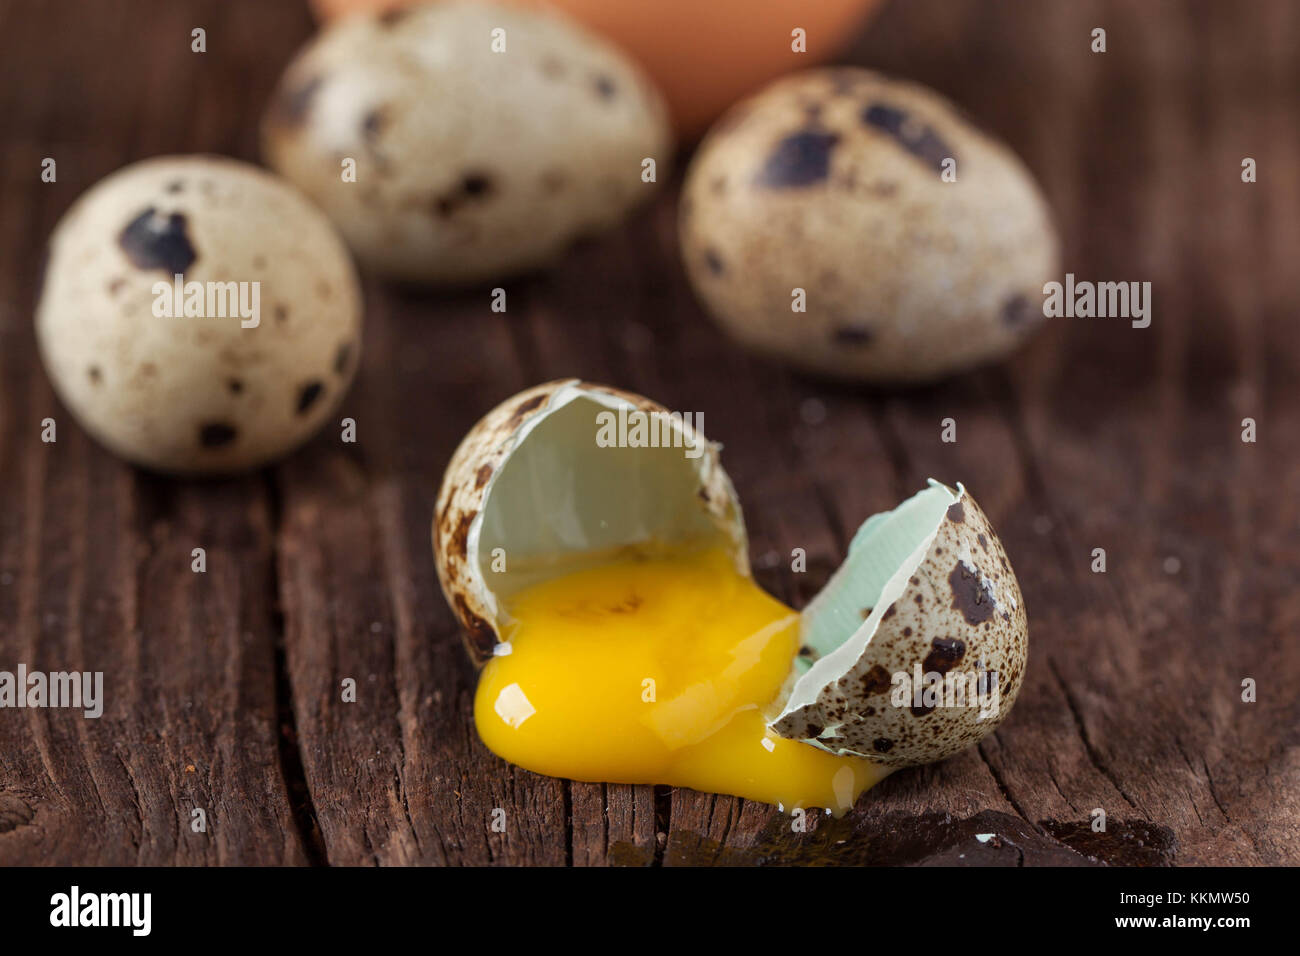 Как разбивать перепелиные яйца. Разбитые перепелиные яйца. Желток перепелиного яйца. Камень похож по цвету на перепелиное яйцо. Перепелиное яйцо разбитое.